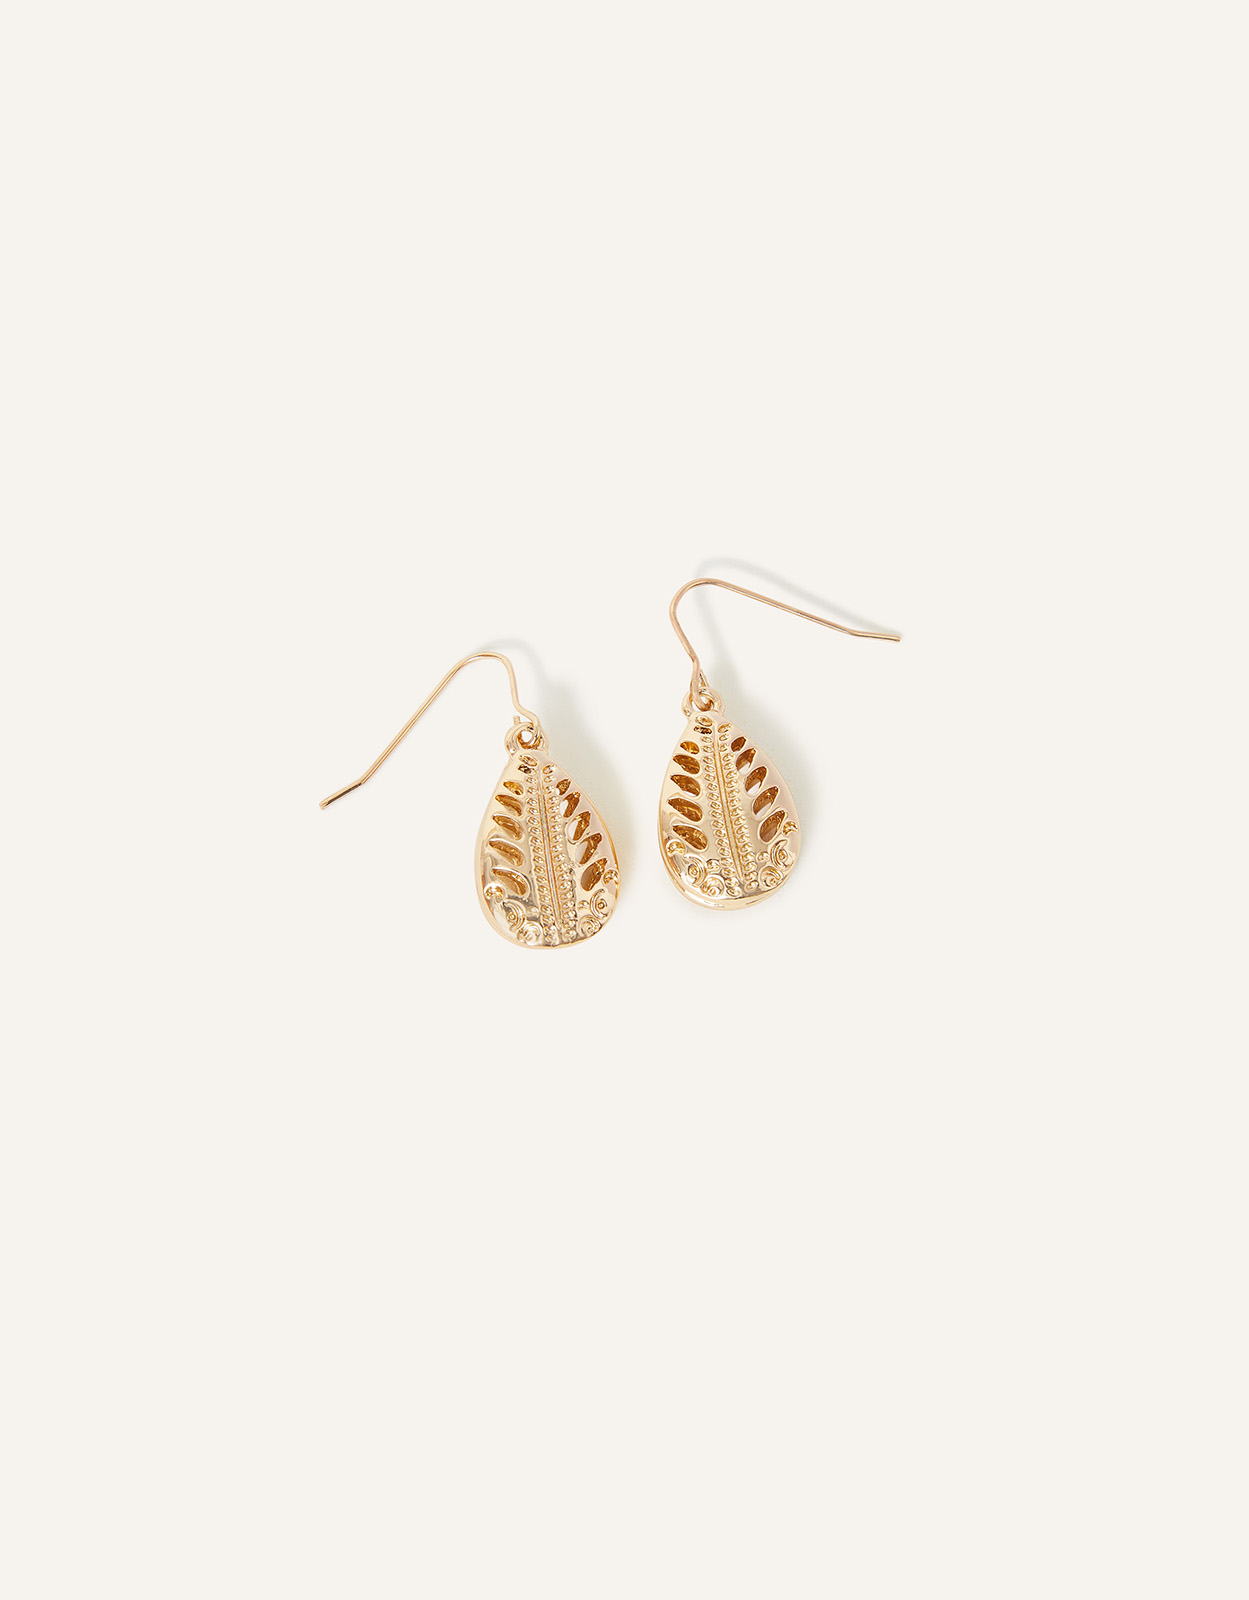 Accessorize Women's Gold Filigree Leaf Short Drop Earrings, Size: 3cm